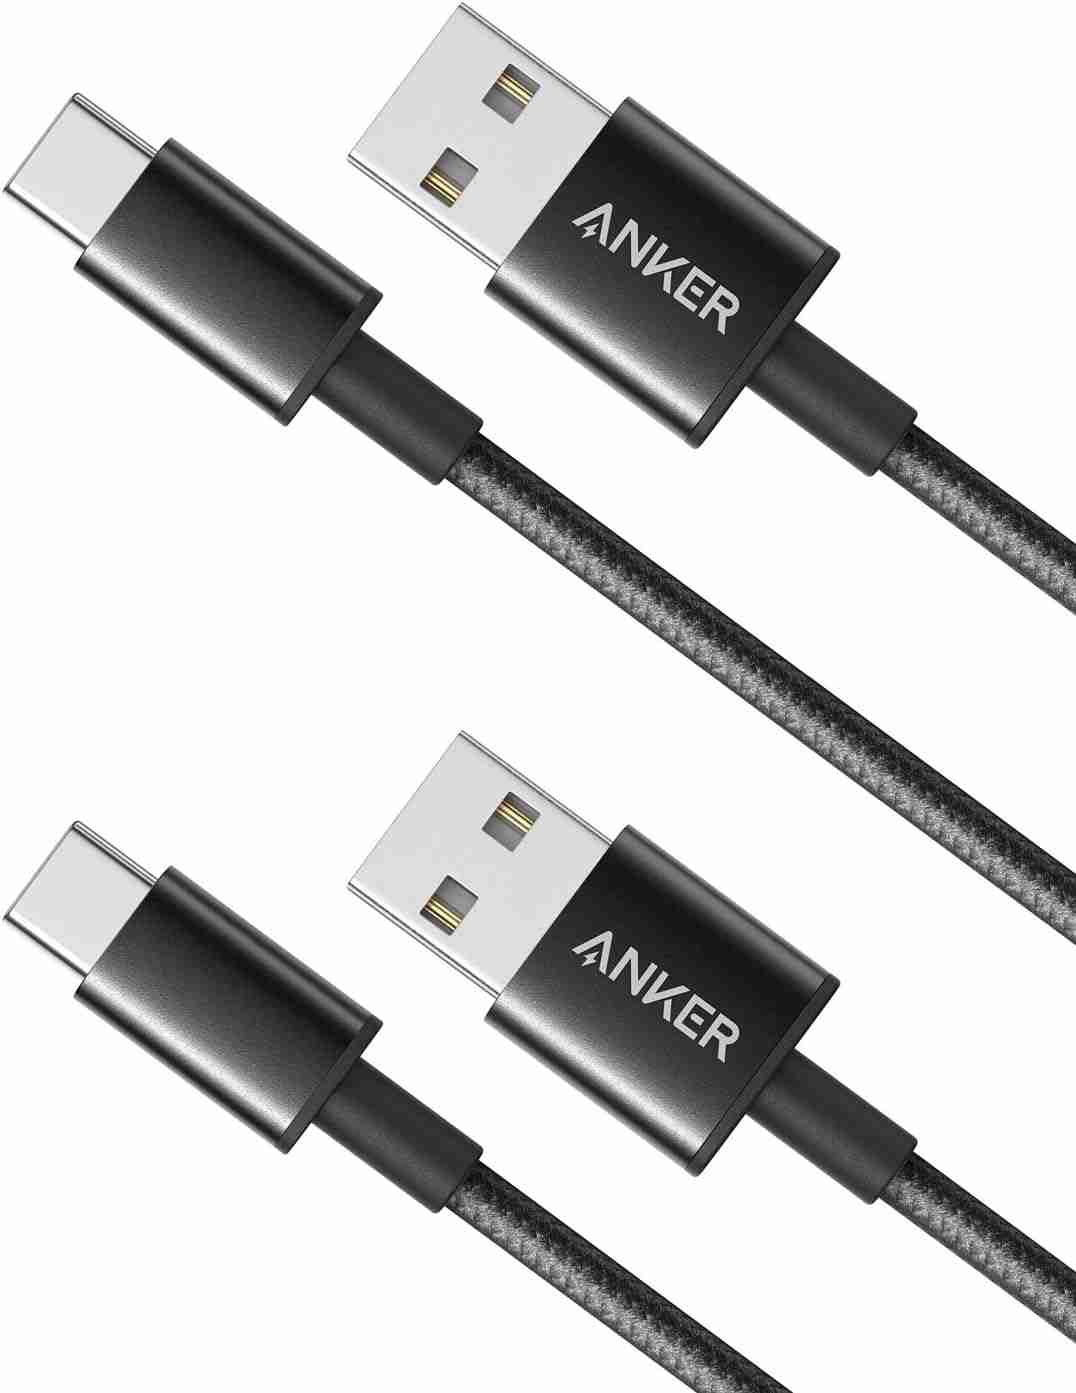 「Anker 高耐久ナイロン USB-C & USB-A ケーブル (USB2.0対応)」は2本セットで税込990円